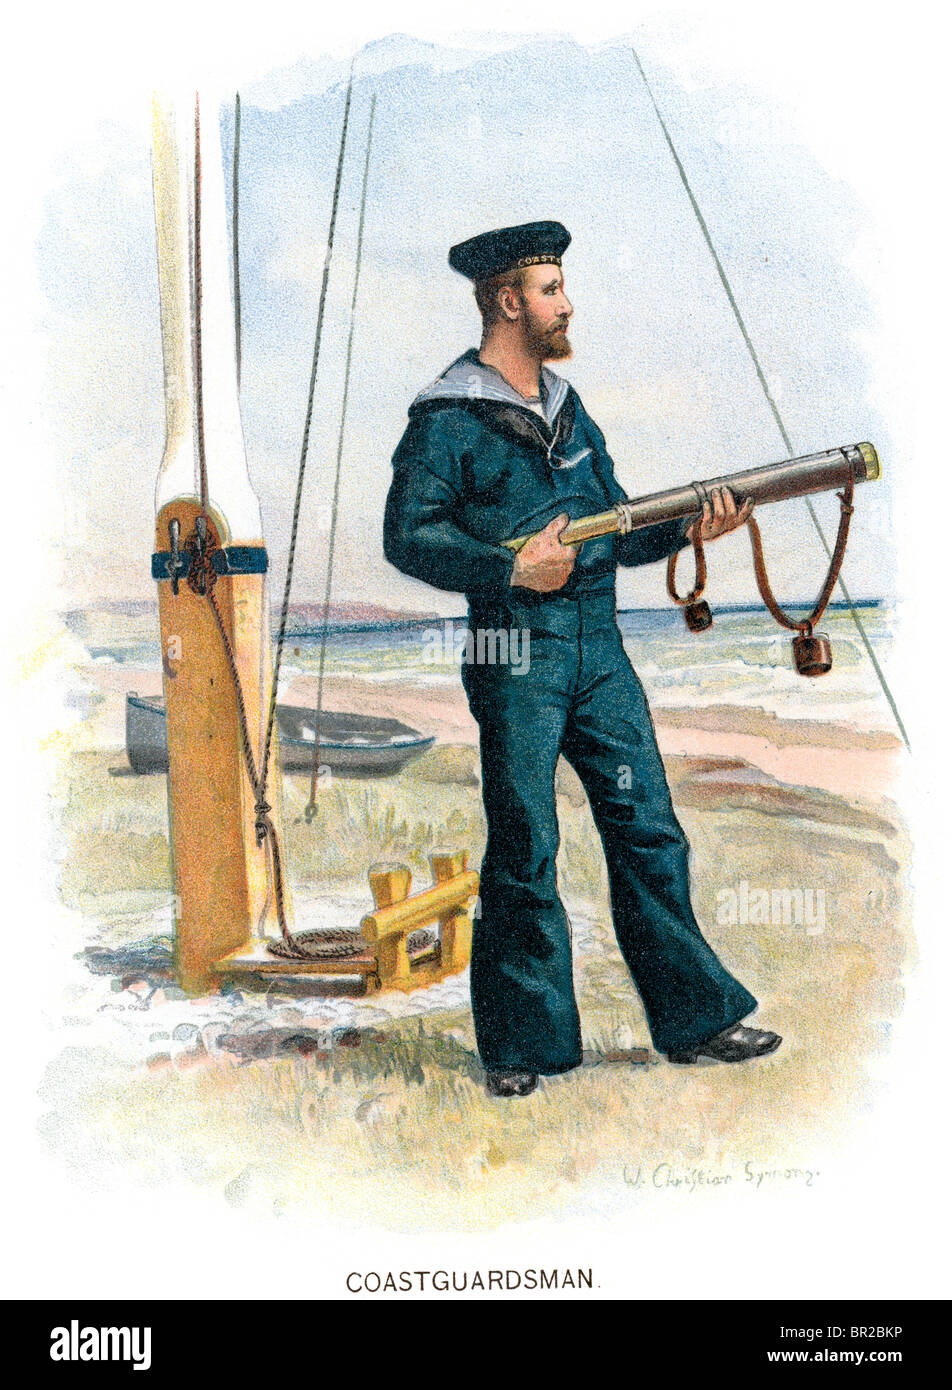 A Victorian era coastguard Stock Photo